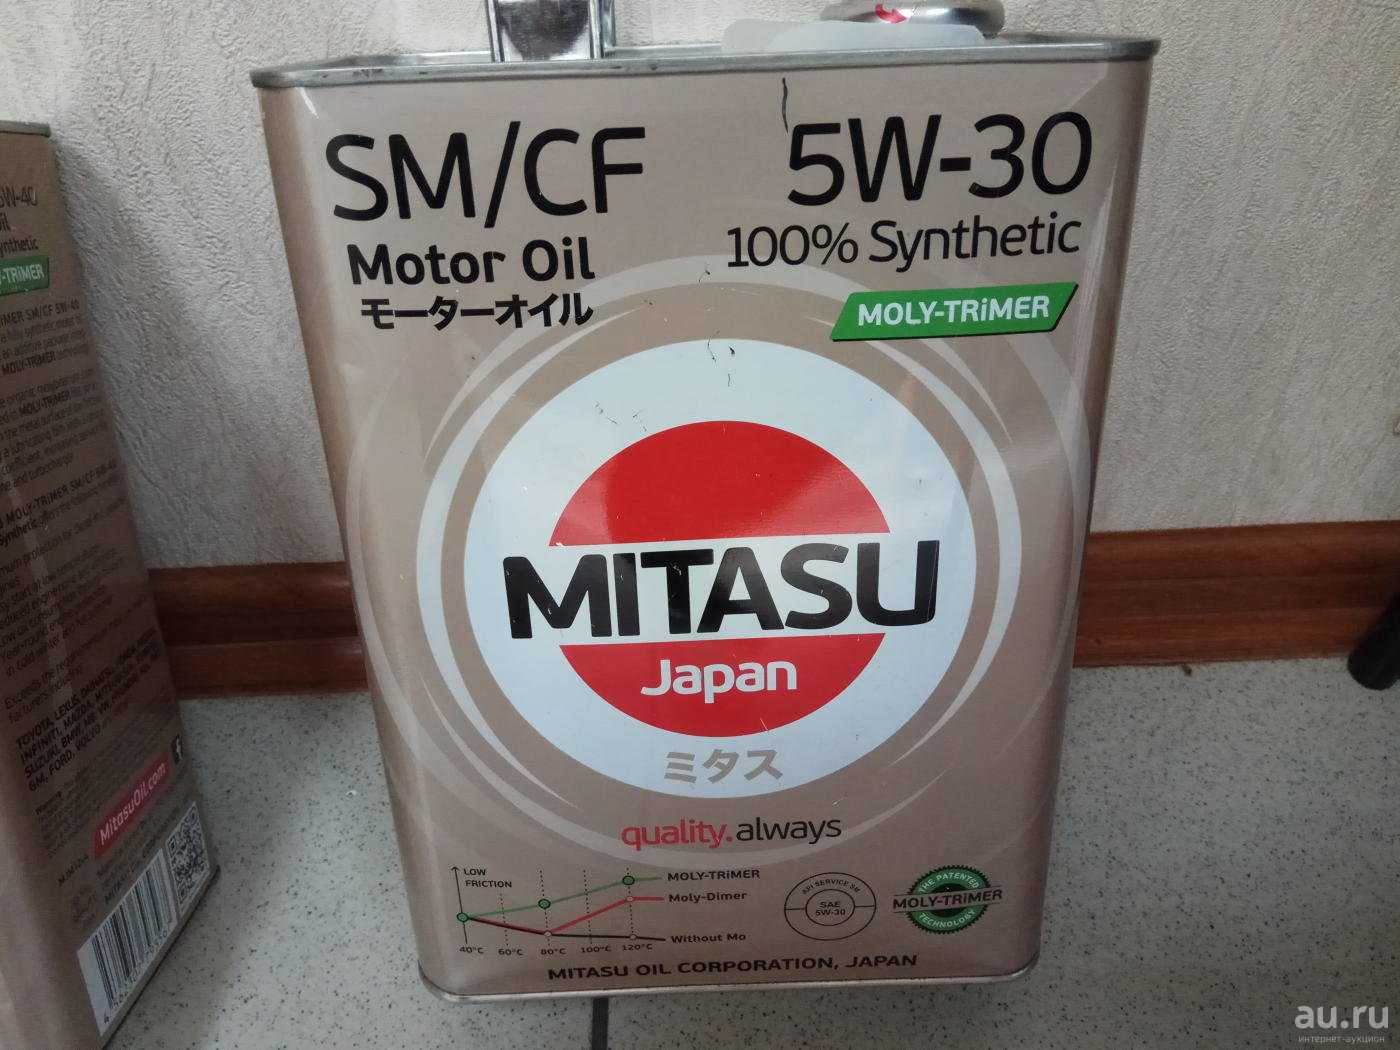 Какое масло в лансер 1.5. Mj101 Mitasu. Митасу 5w30. Mitasu Platinum 5w30 с3. Mitasu MJ-103/1.